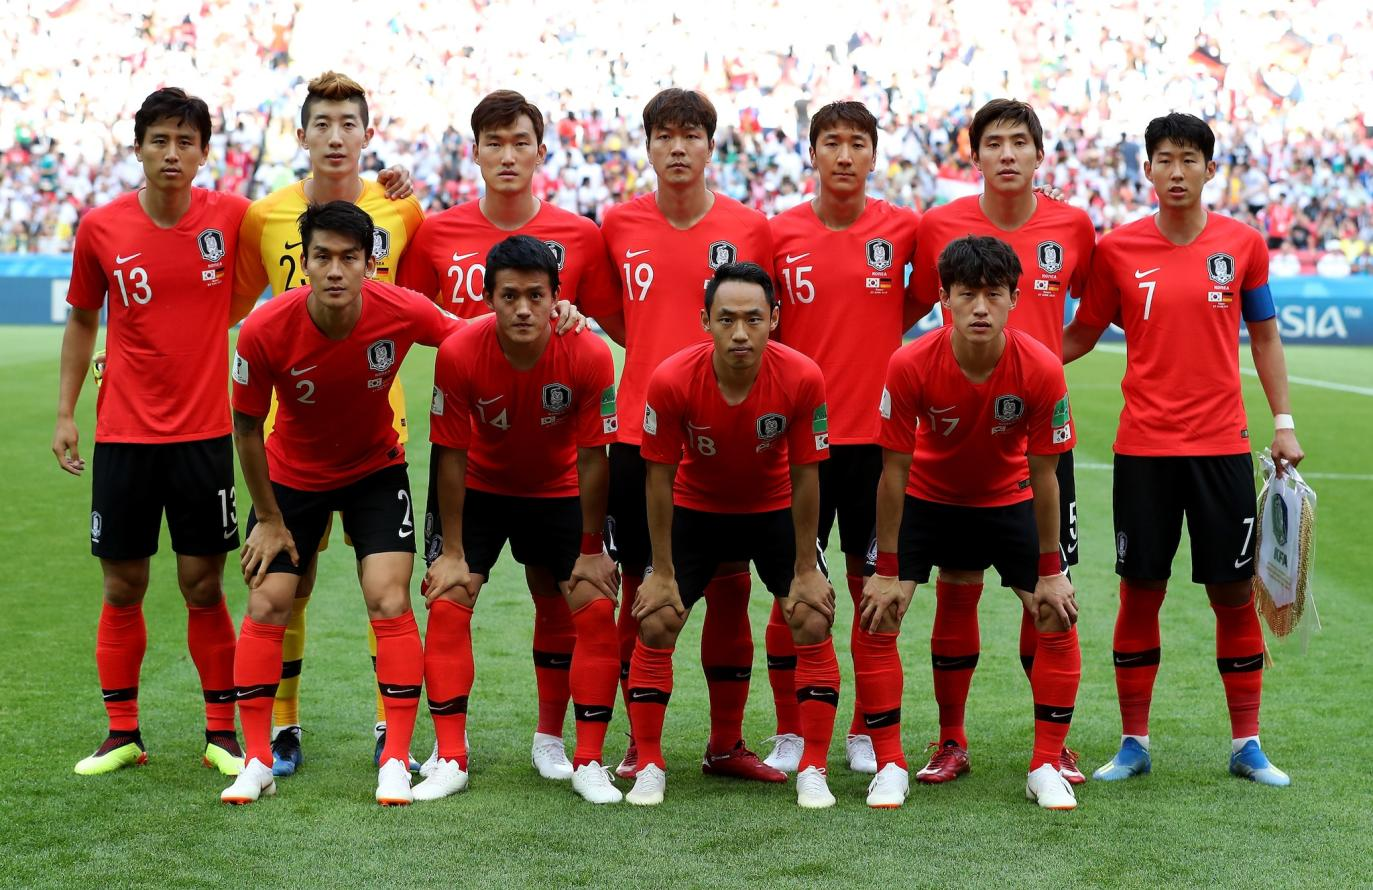 早报:卢卡库即将回归世界杯布斯克茨将升任世界杯首任队长韩国